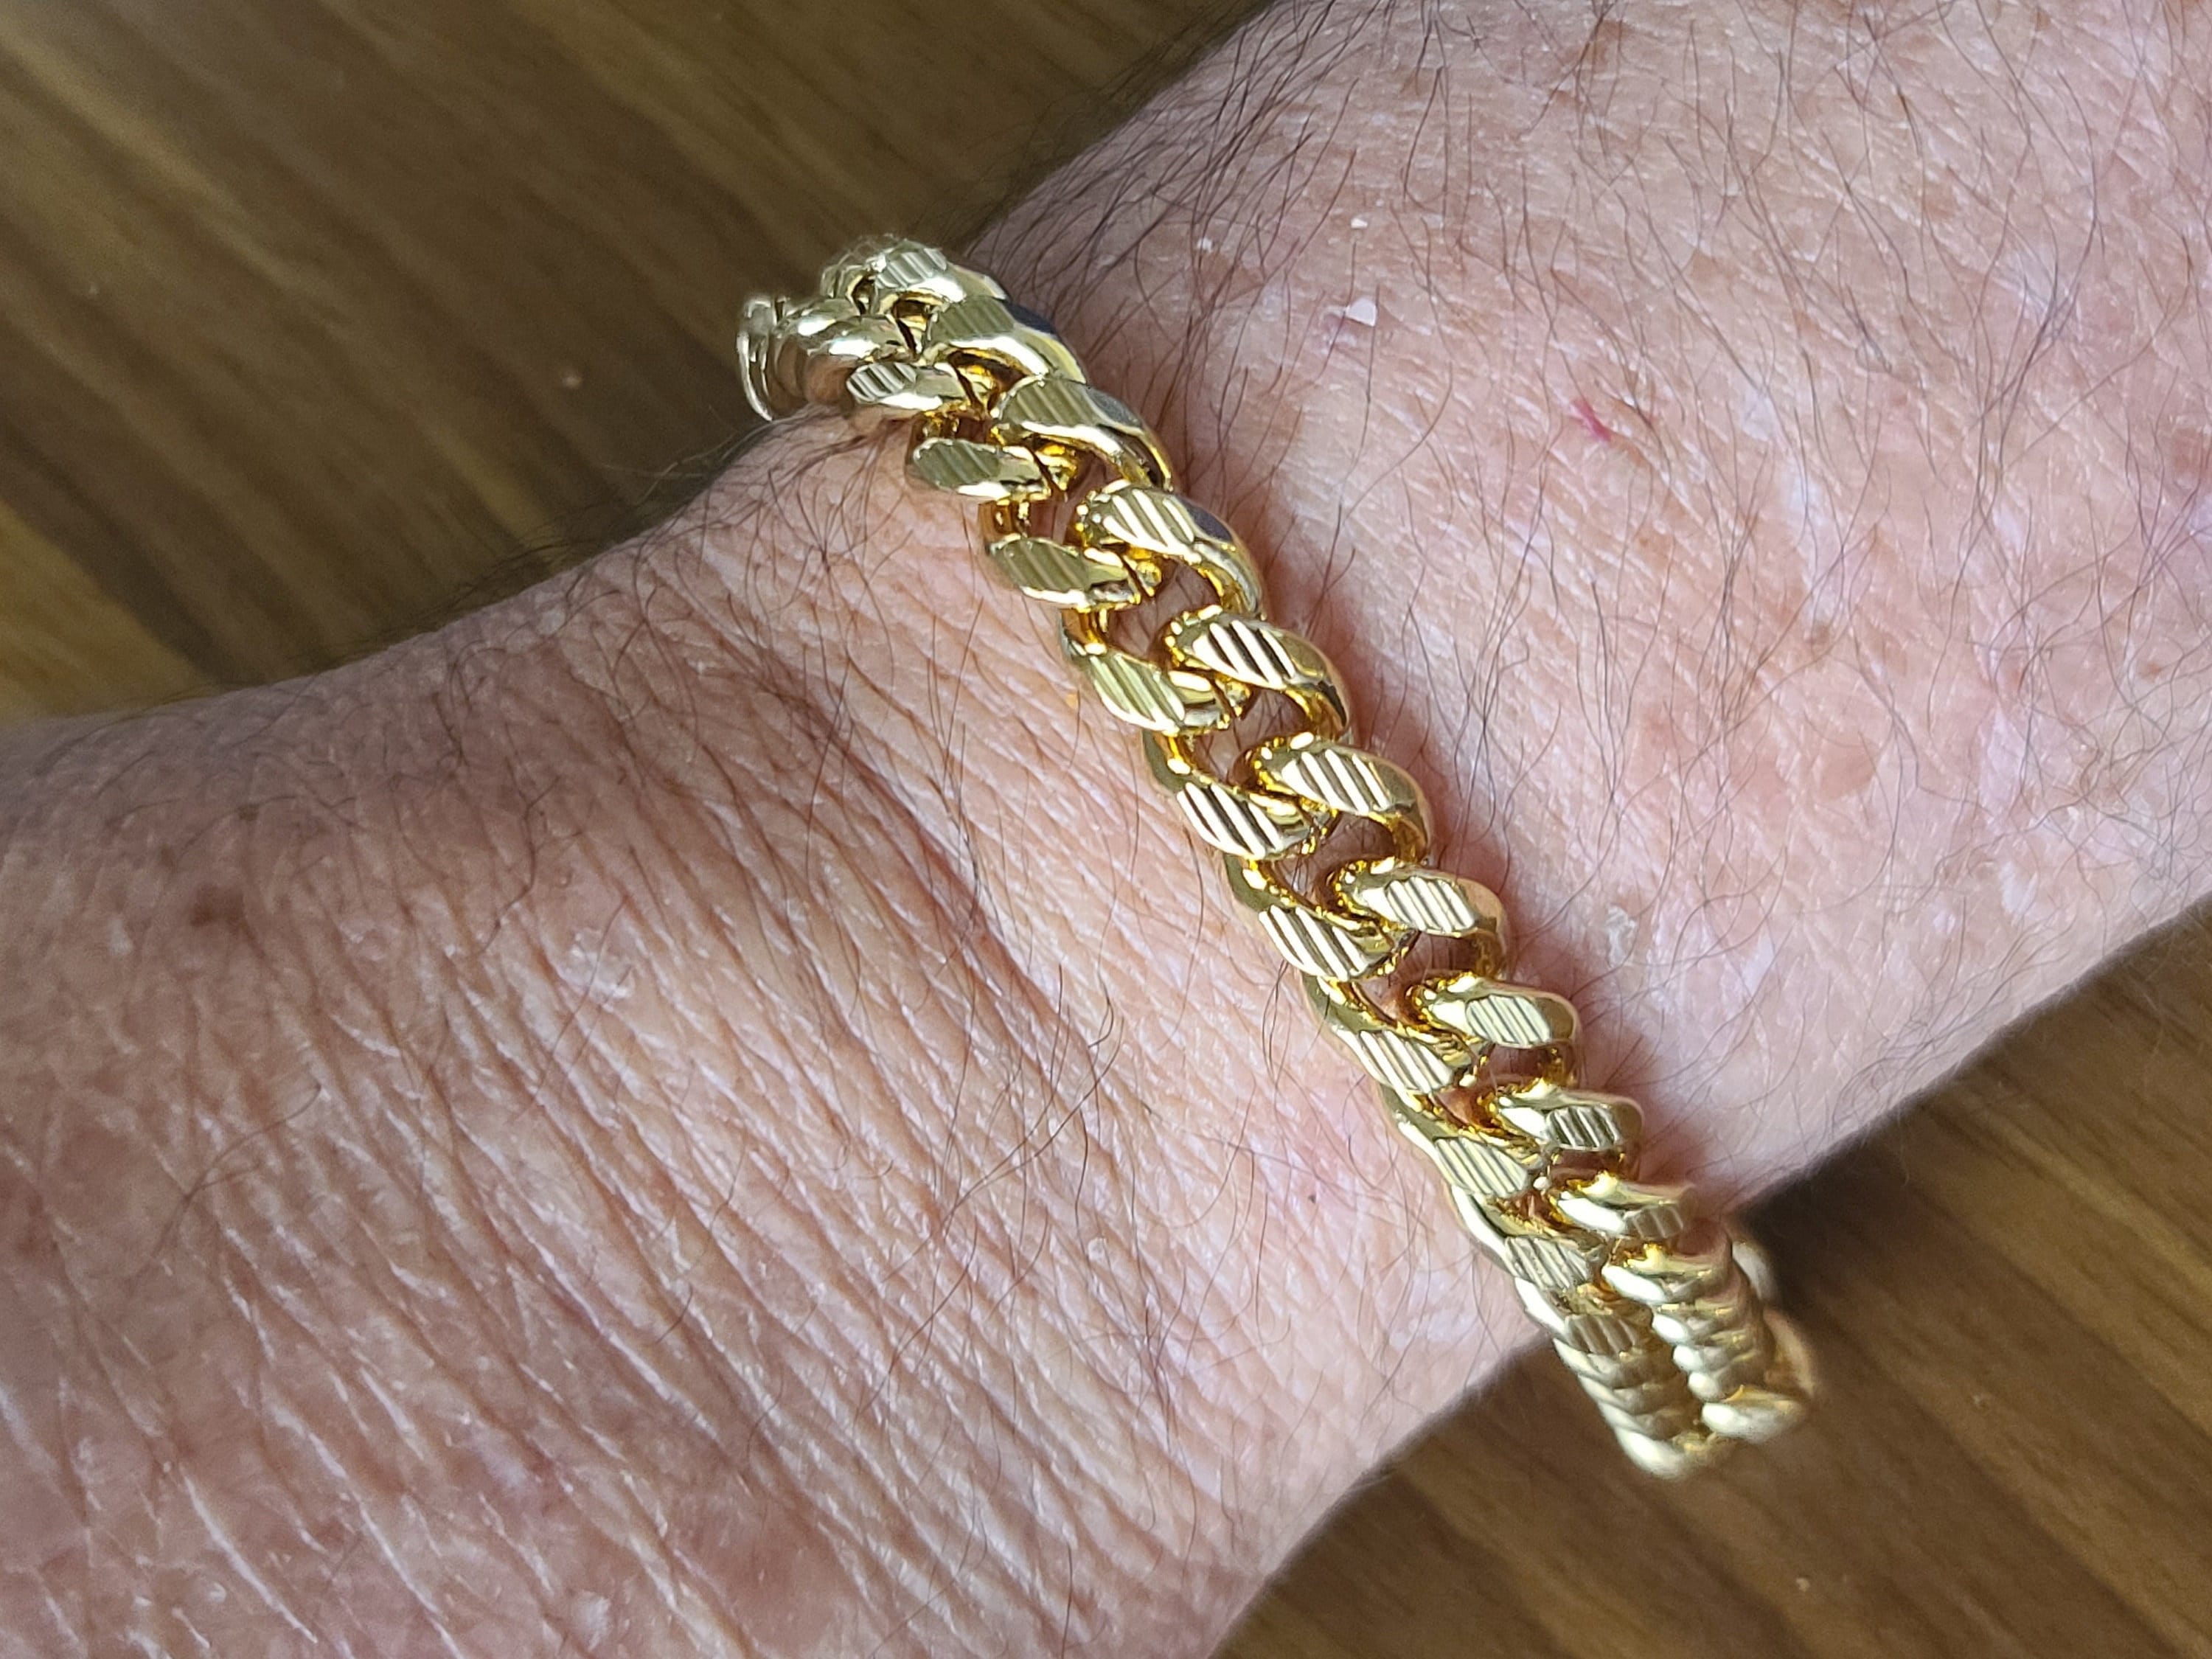 1 oz 24k Gold Bracelet, Concealable Wealth